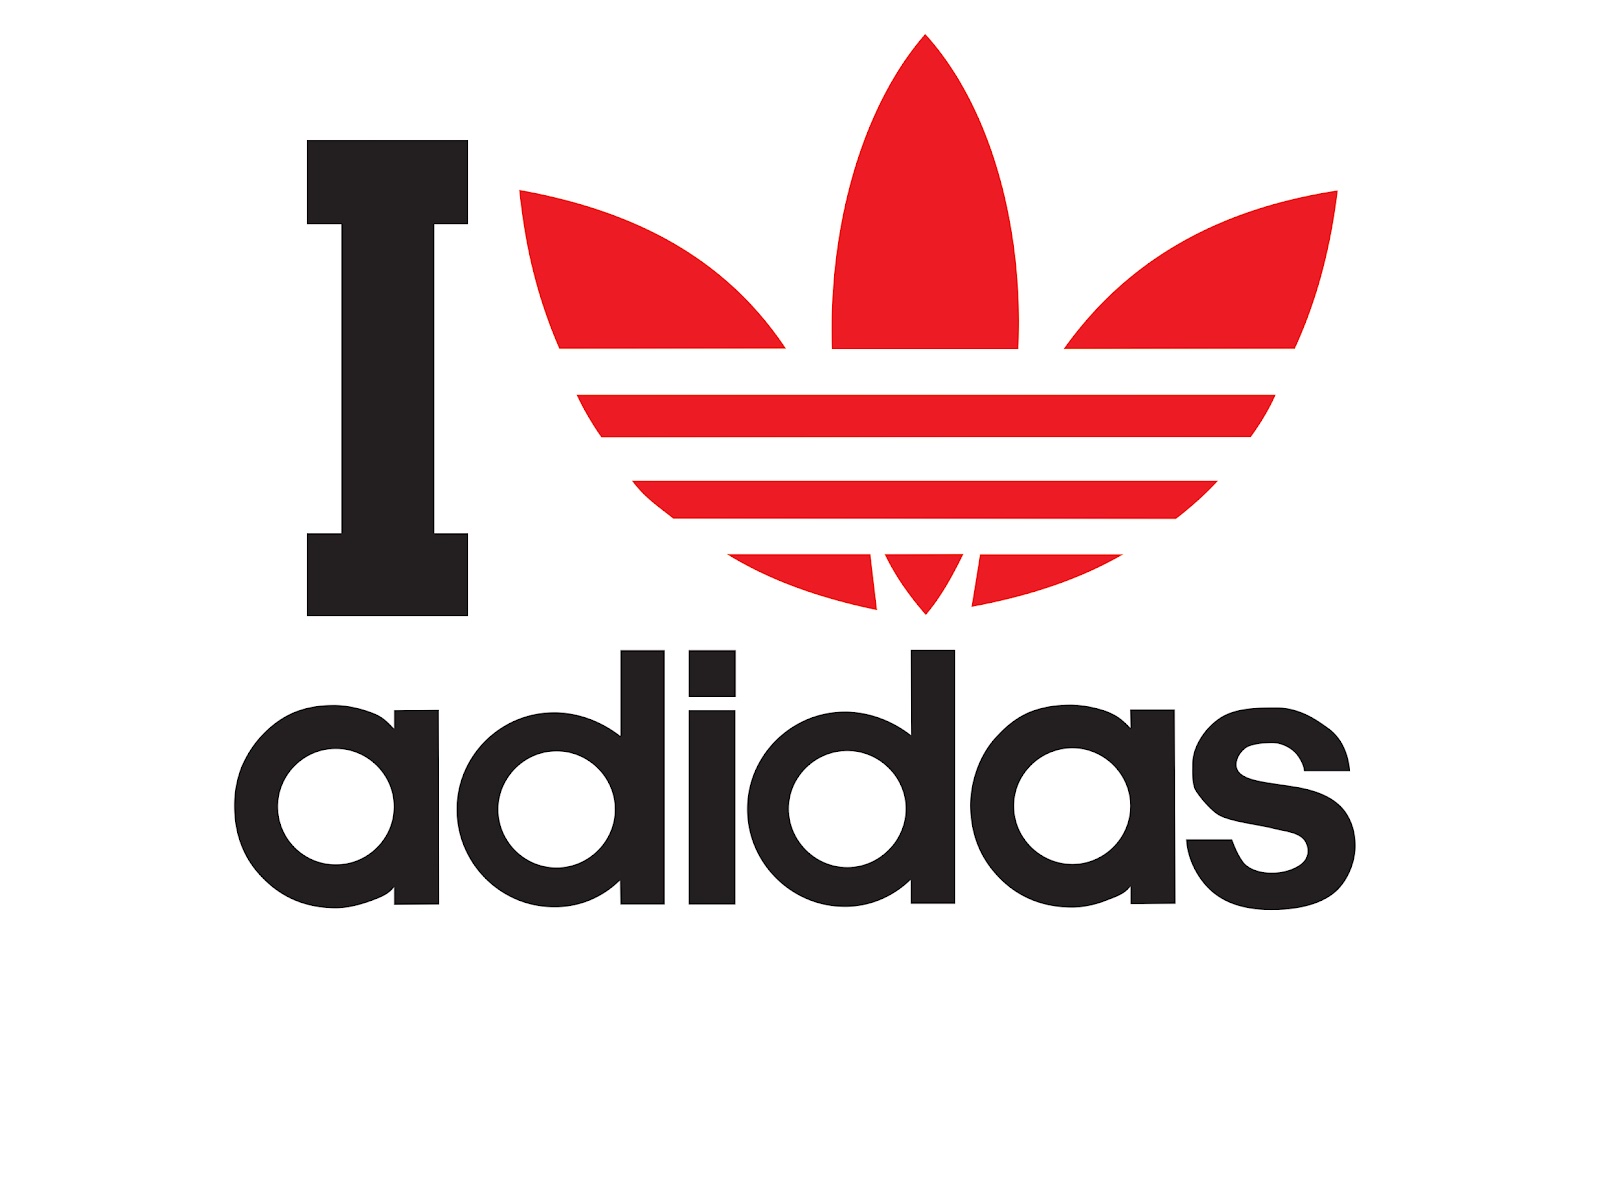 Red adidas Logos